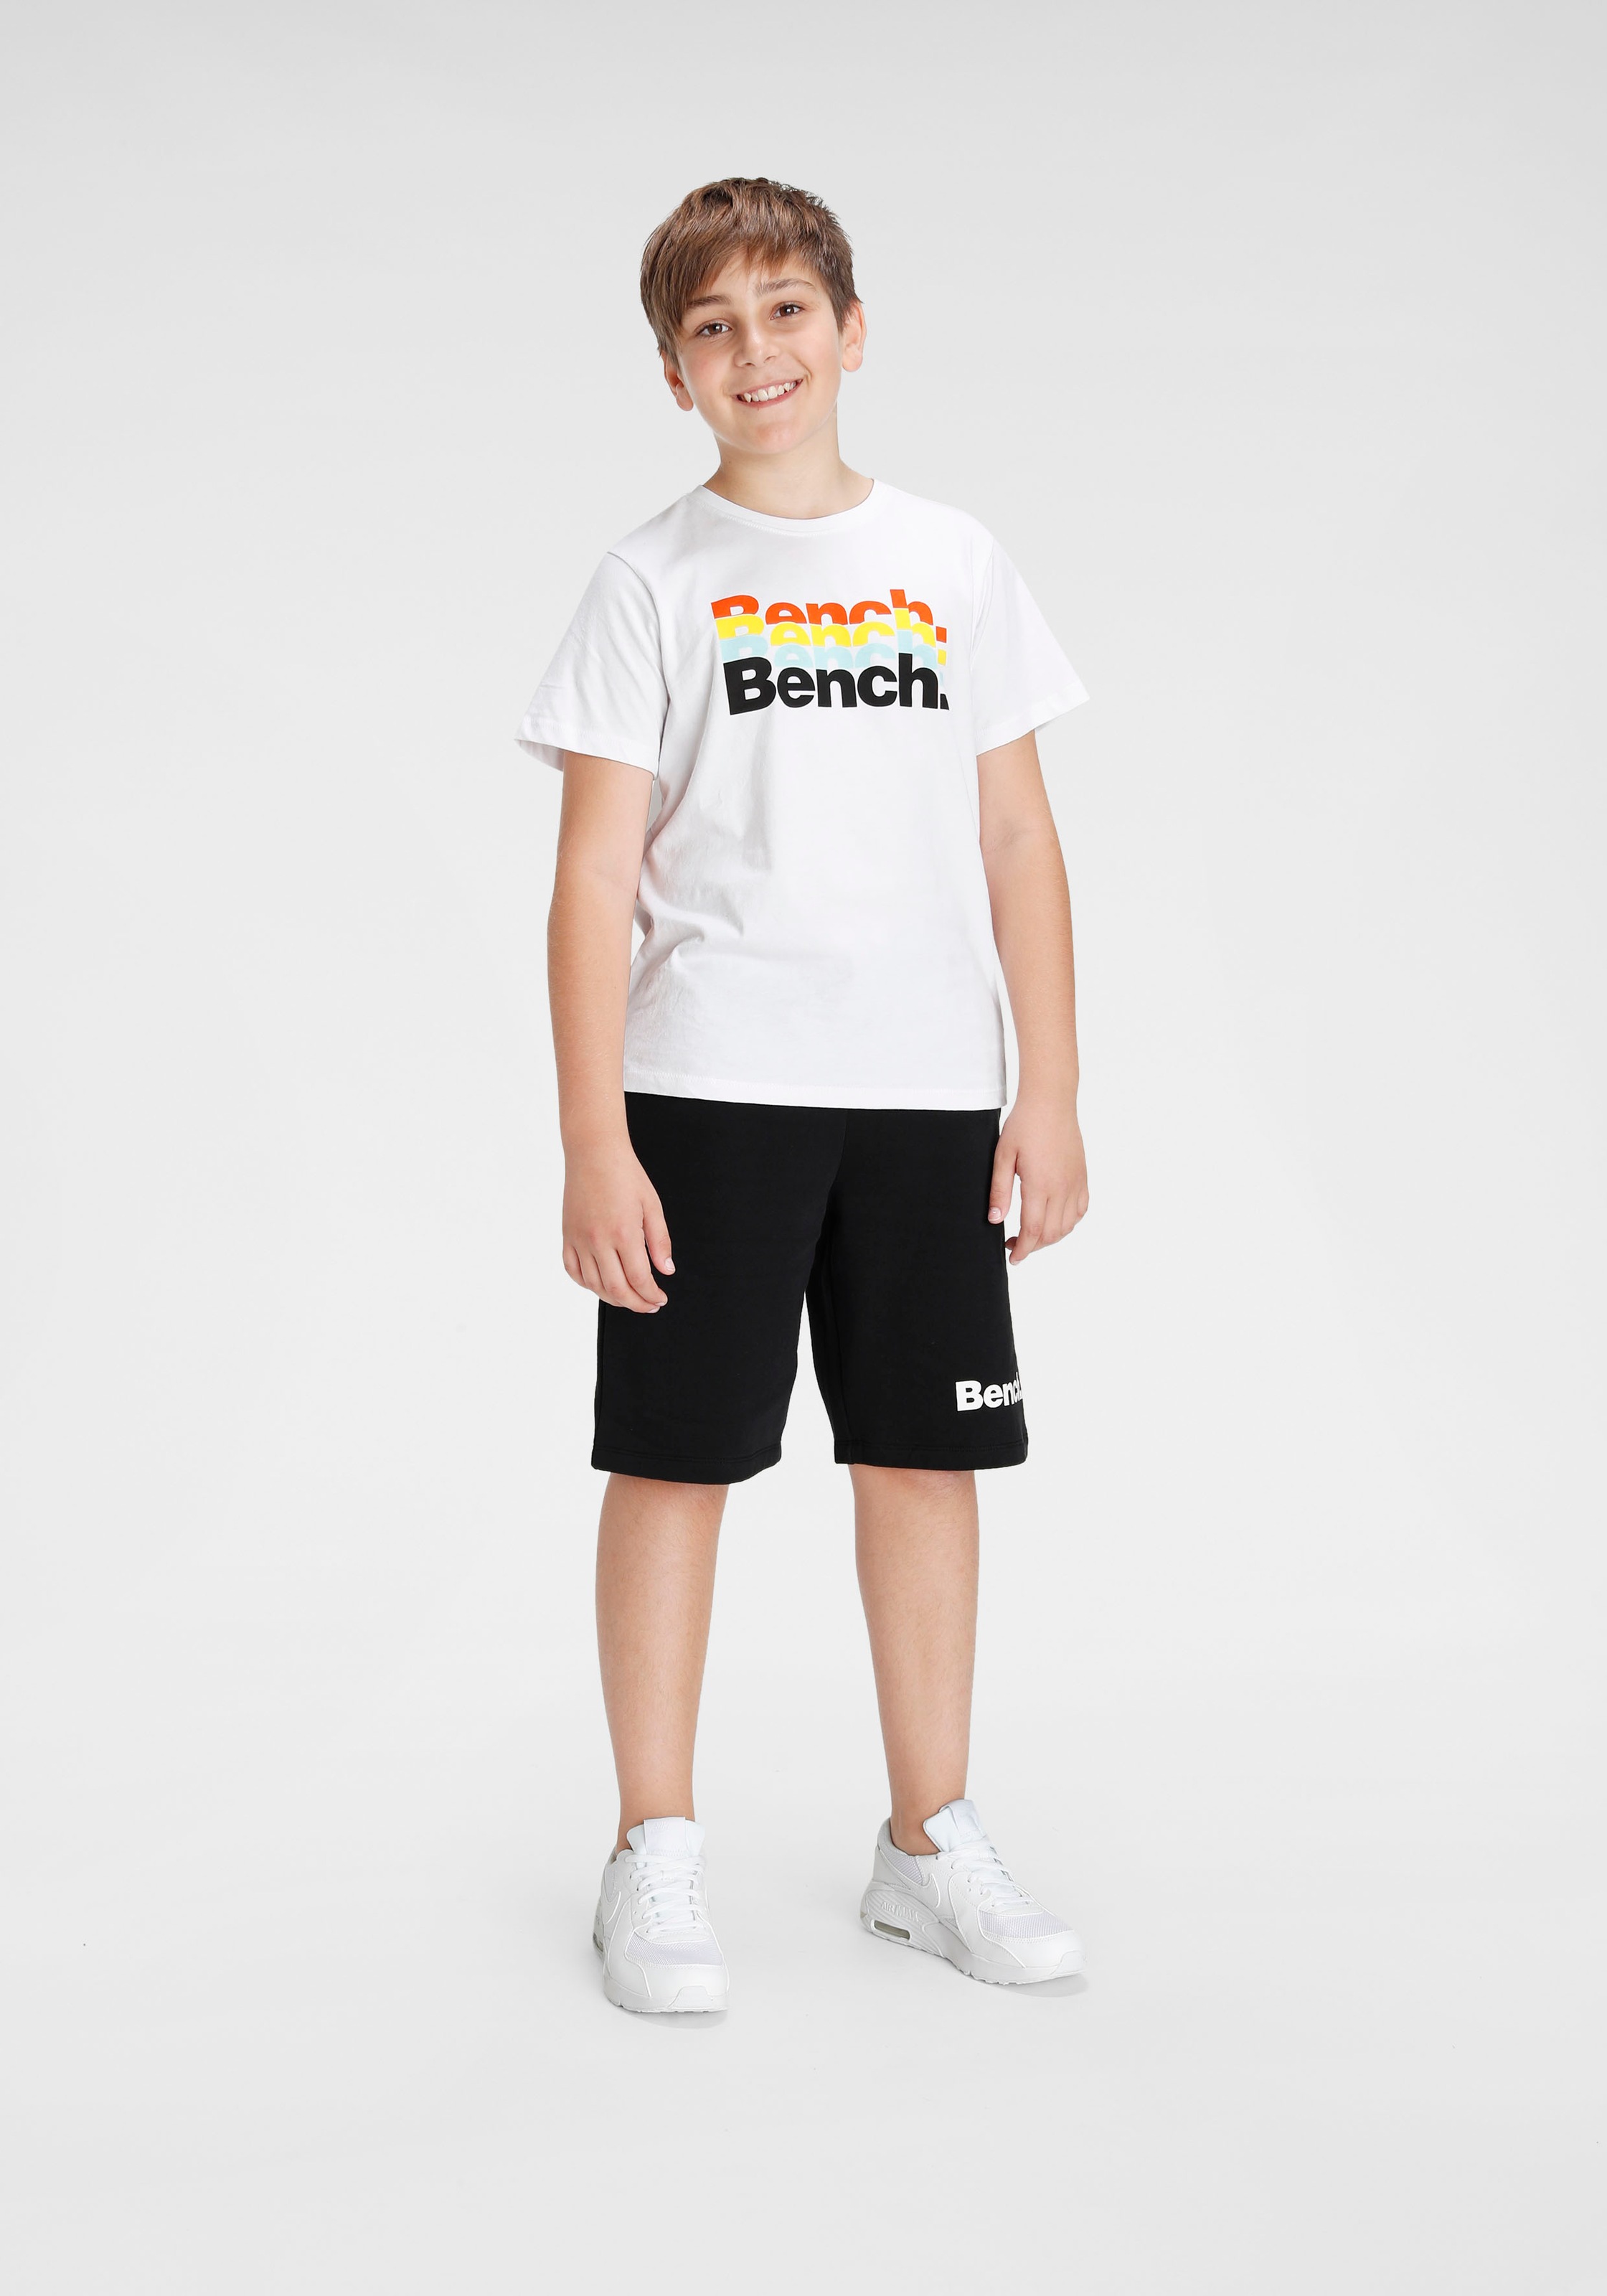 Bench. T-Shirt & Bermudas, (Set, 2 sans frais sur livraison tlg.) de